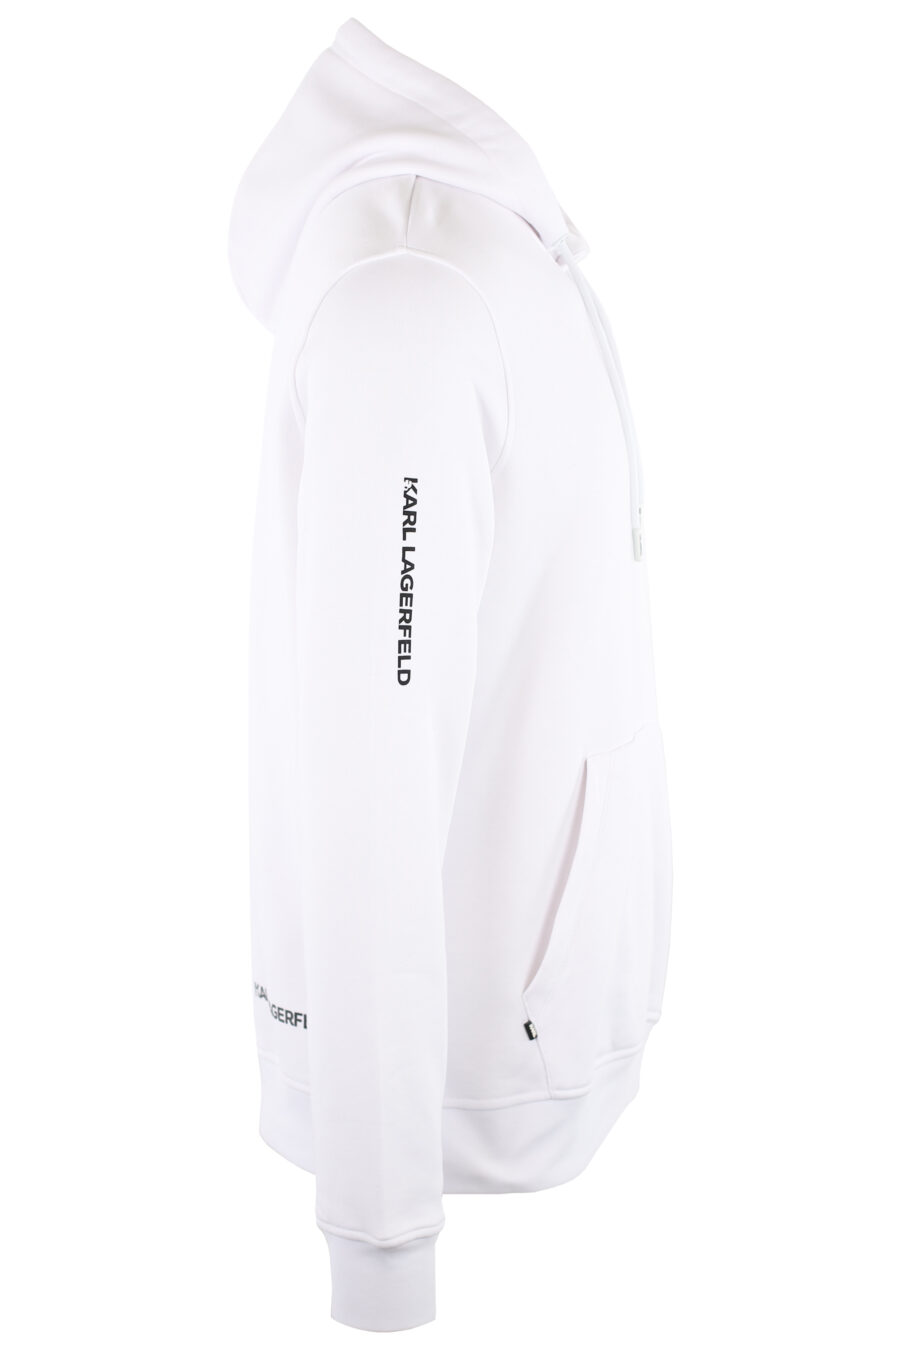 Weißes Sweatshirt mit Kapuze und Logo "ikonik" klein - IMG 7461